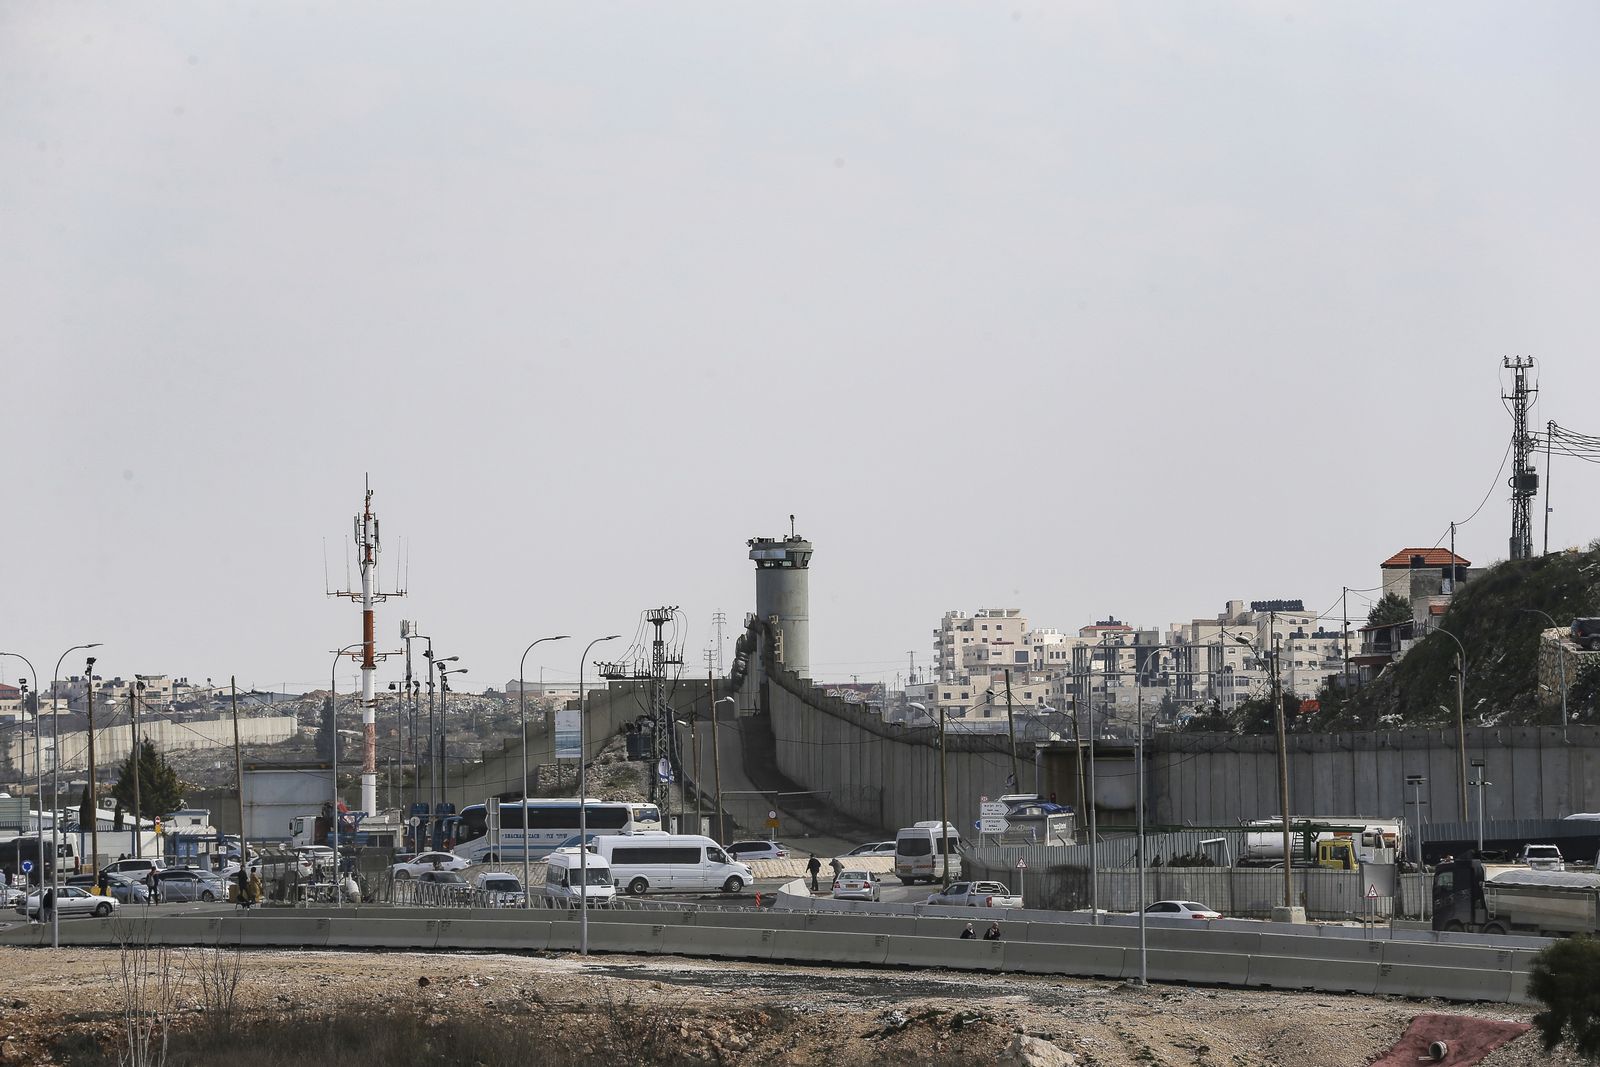 منظر عام لبلدة كفر عقب ضواحي القدس وجدار الفصل الإسرائيلي، 3 فبراير 2020  - Anadolu Agency via Getty Images